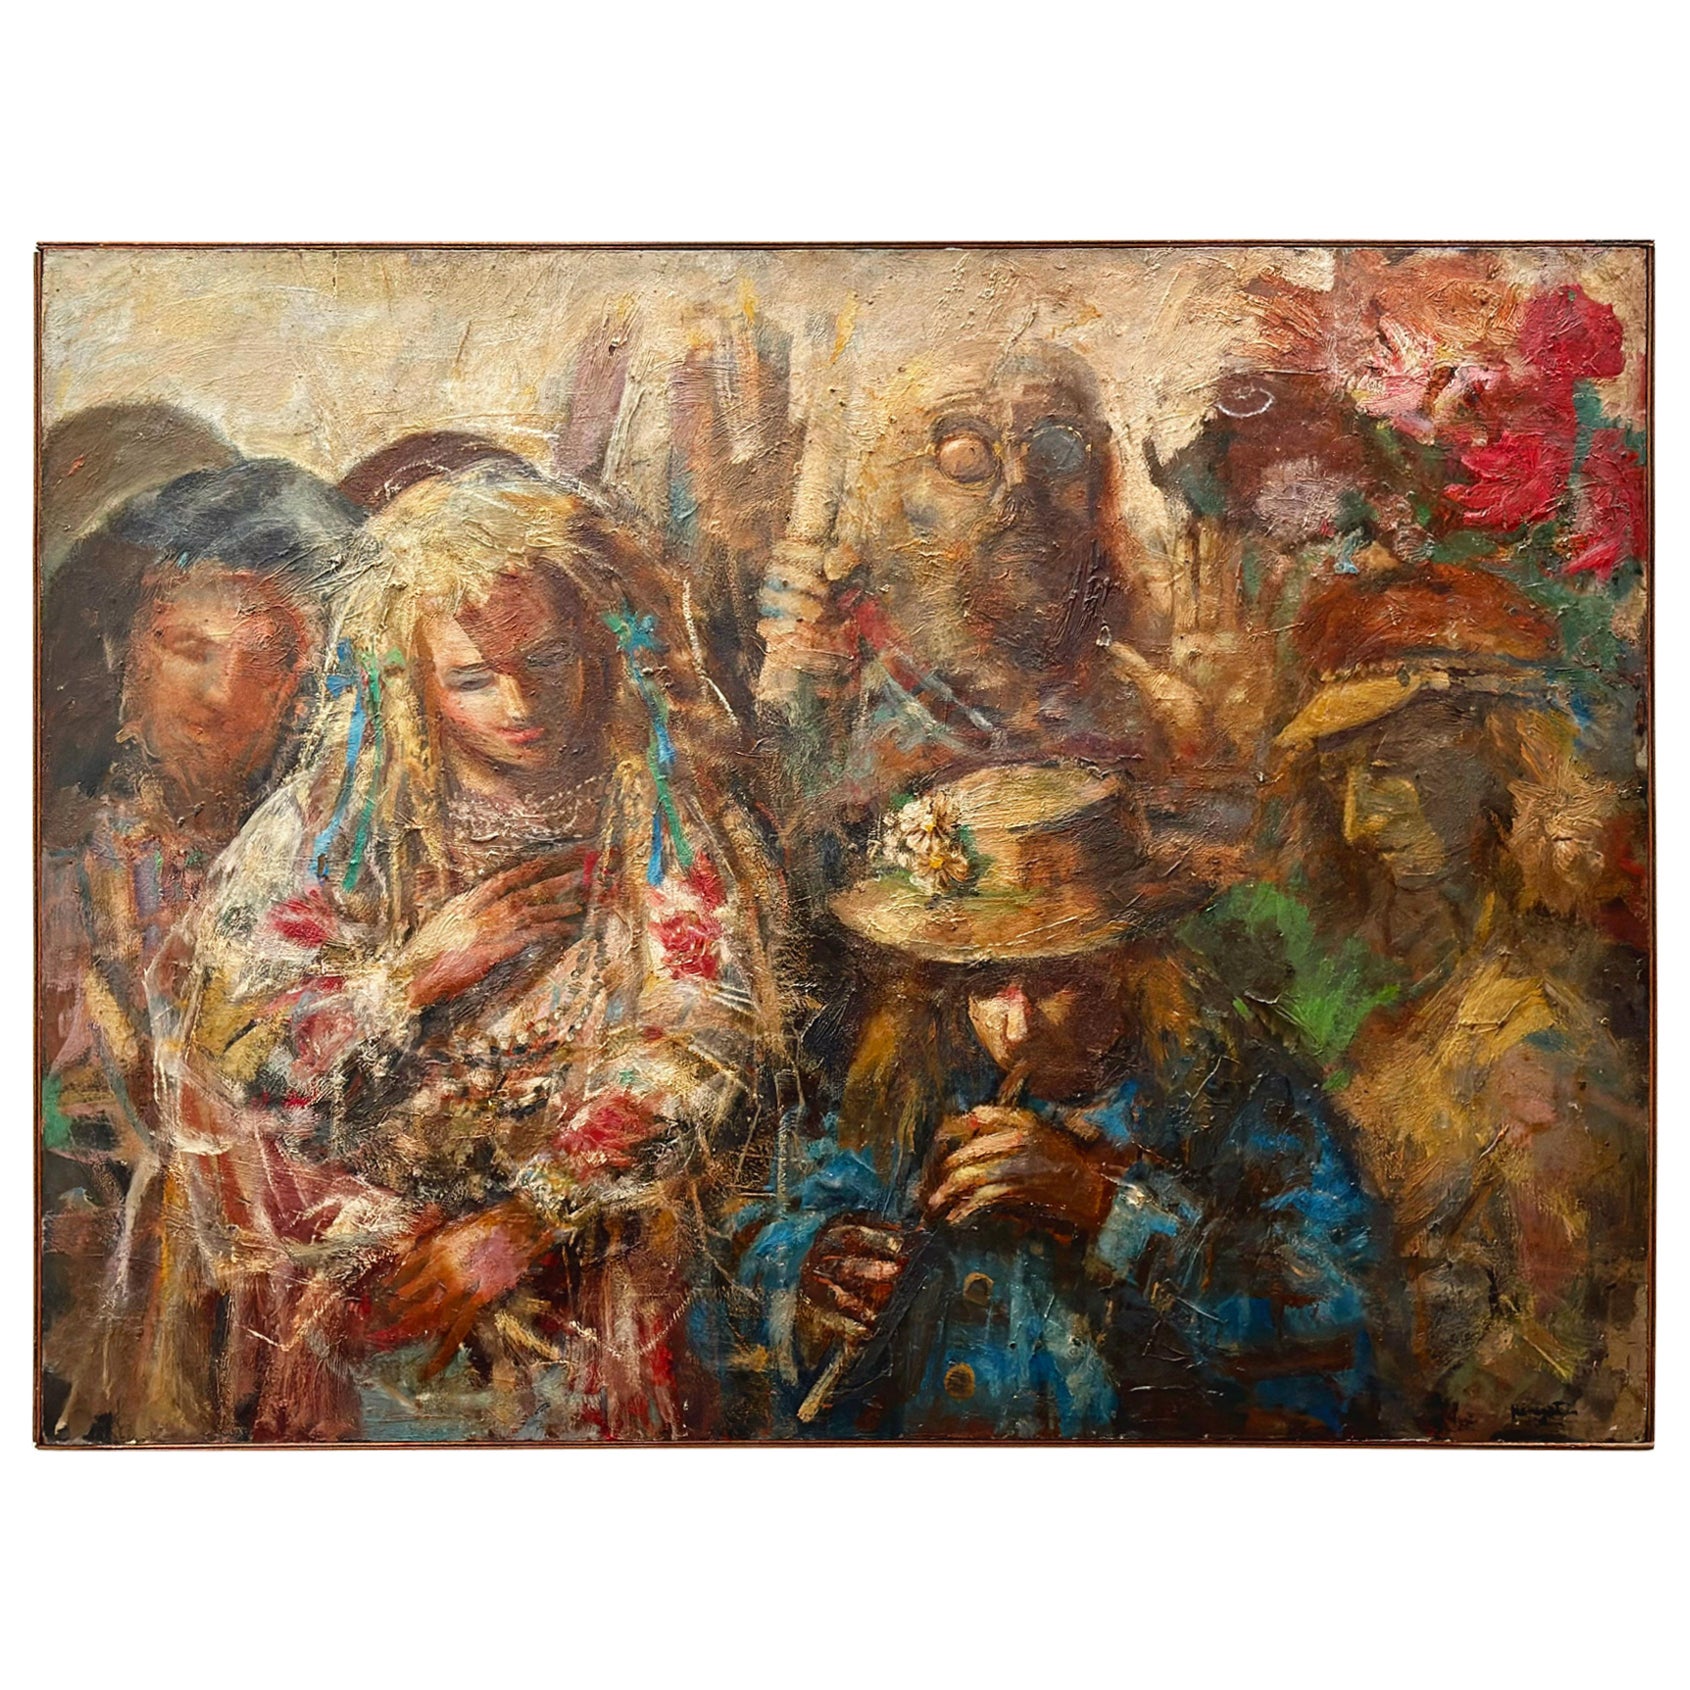 Jonah Kinigstein - Abstract Impressionist Oil on Board - Flower Children Wedding